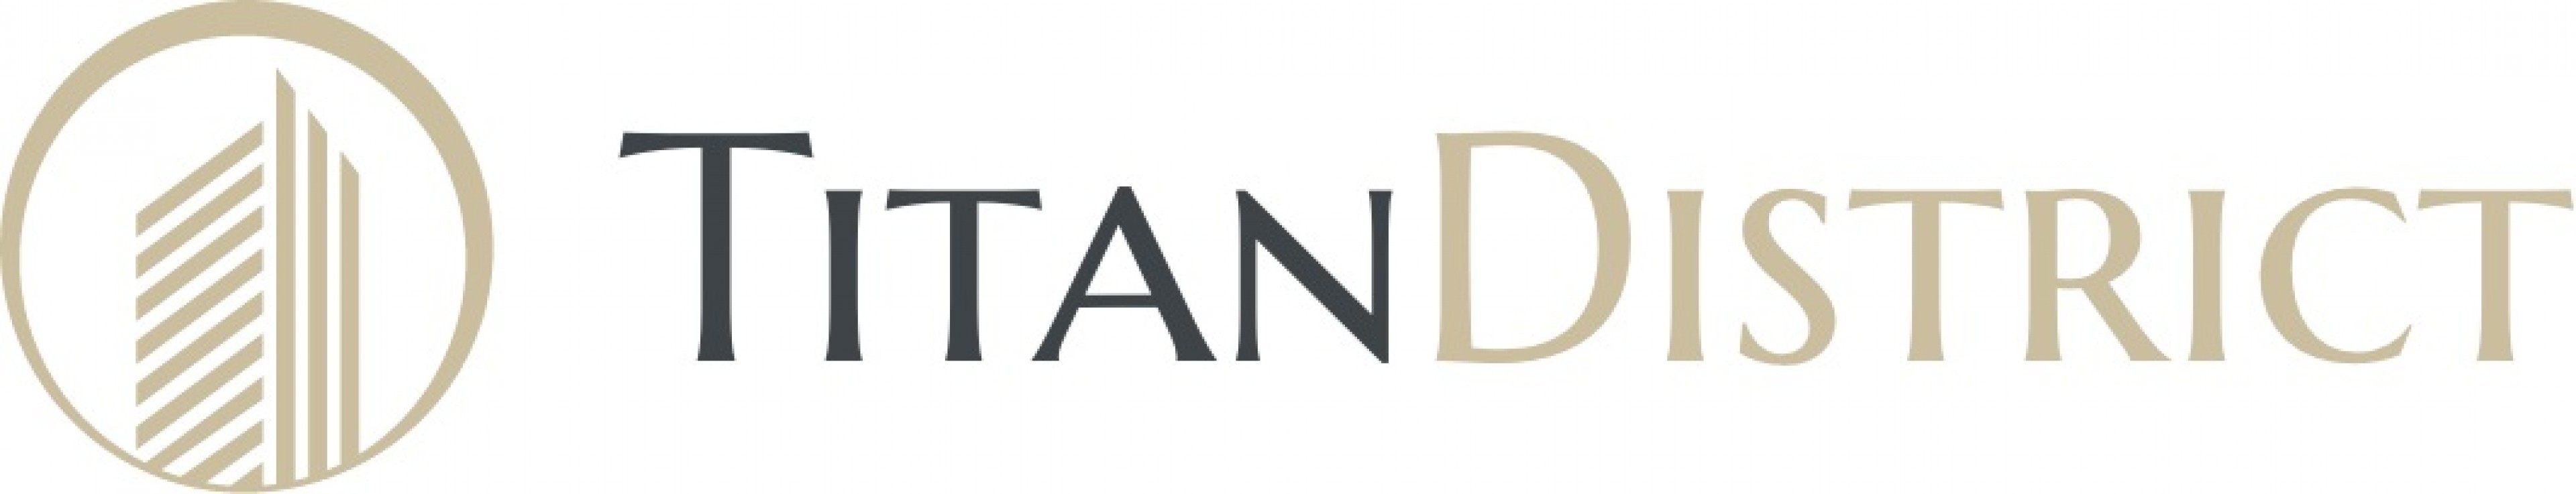 Logo Titan District